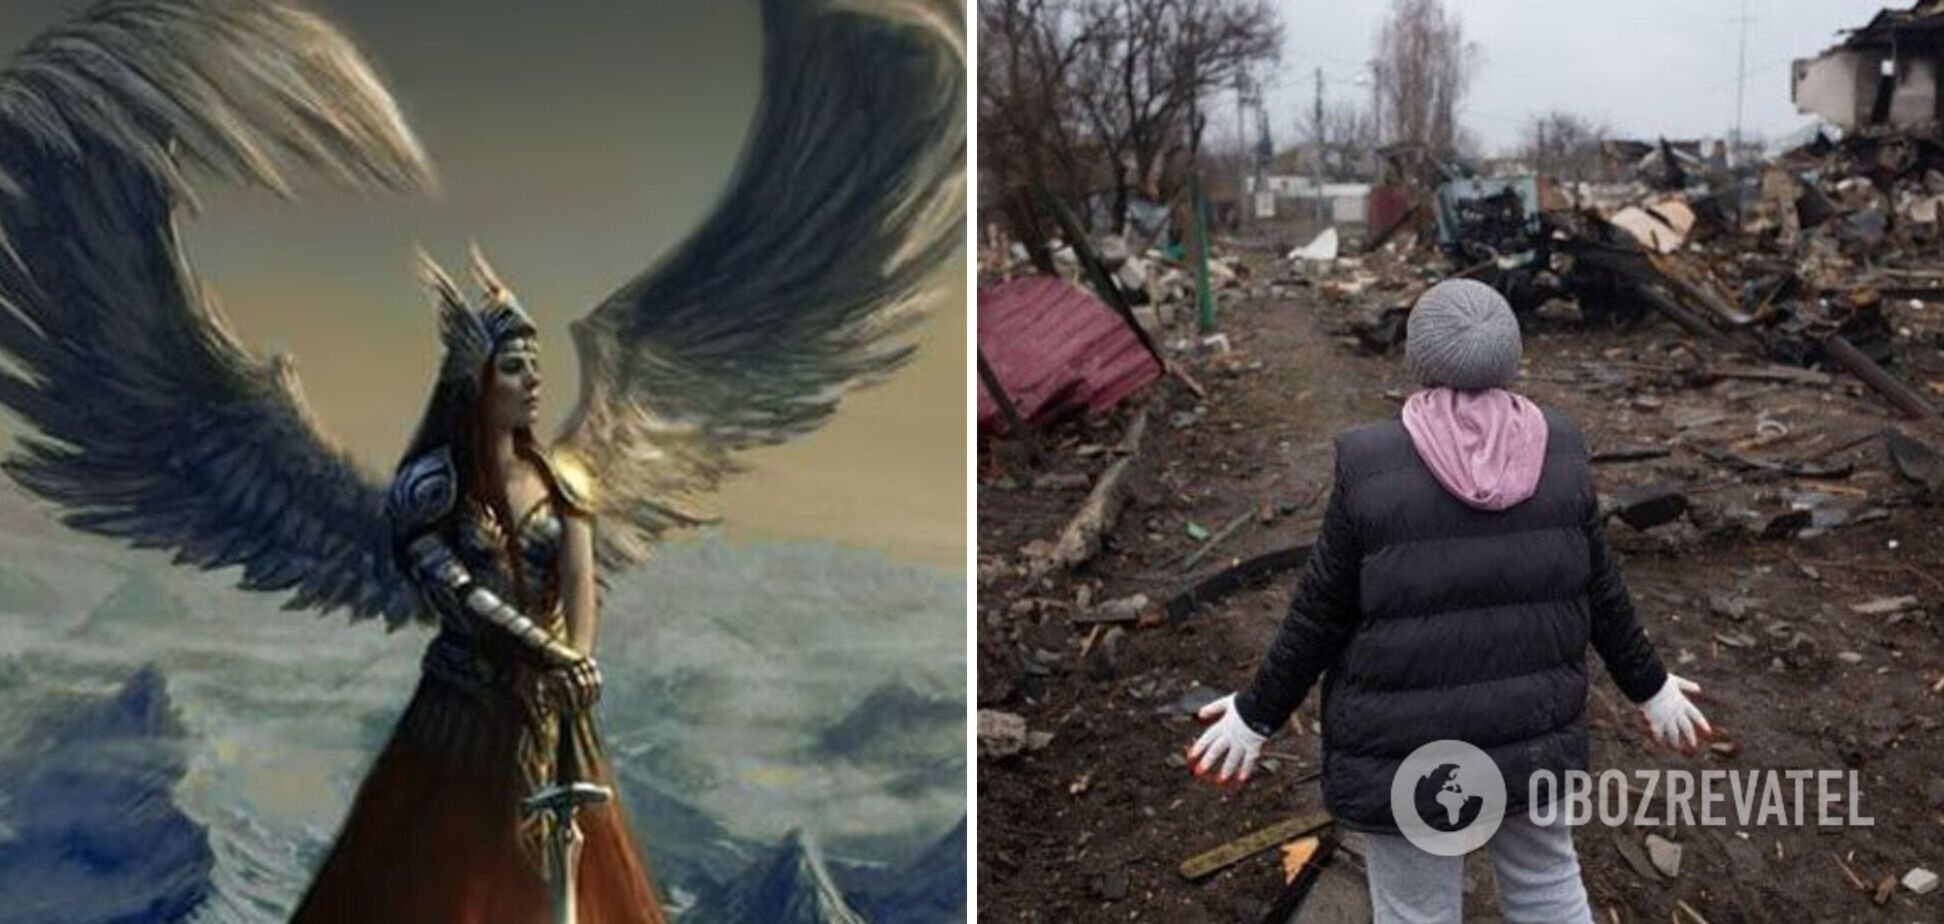 'У лютому вранці прокинулася валькірією': вірш про жінок та реалії війни в Україні зворушив мережу